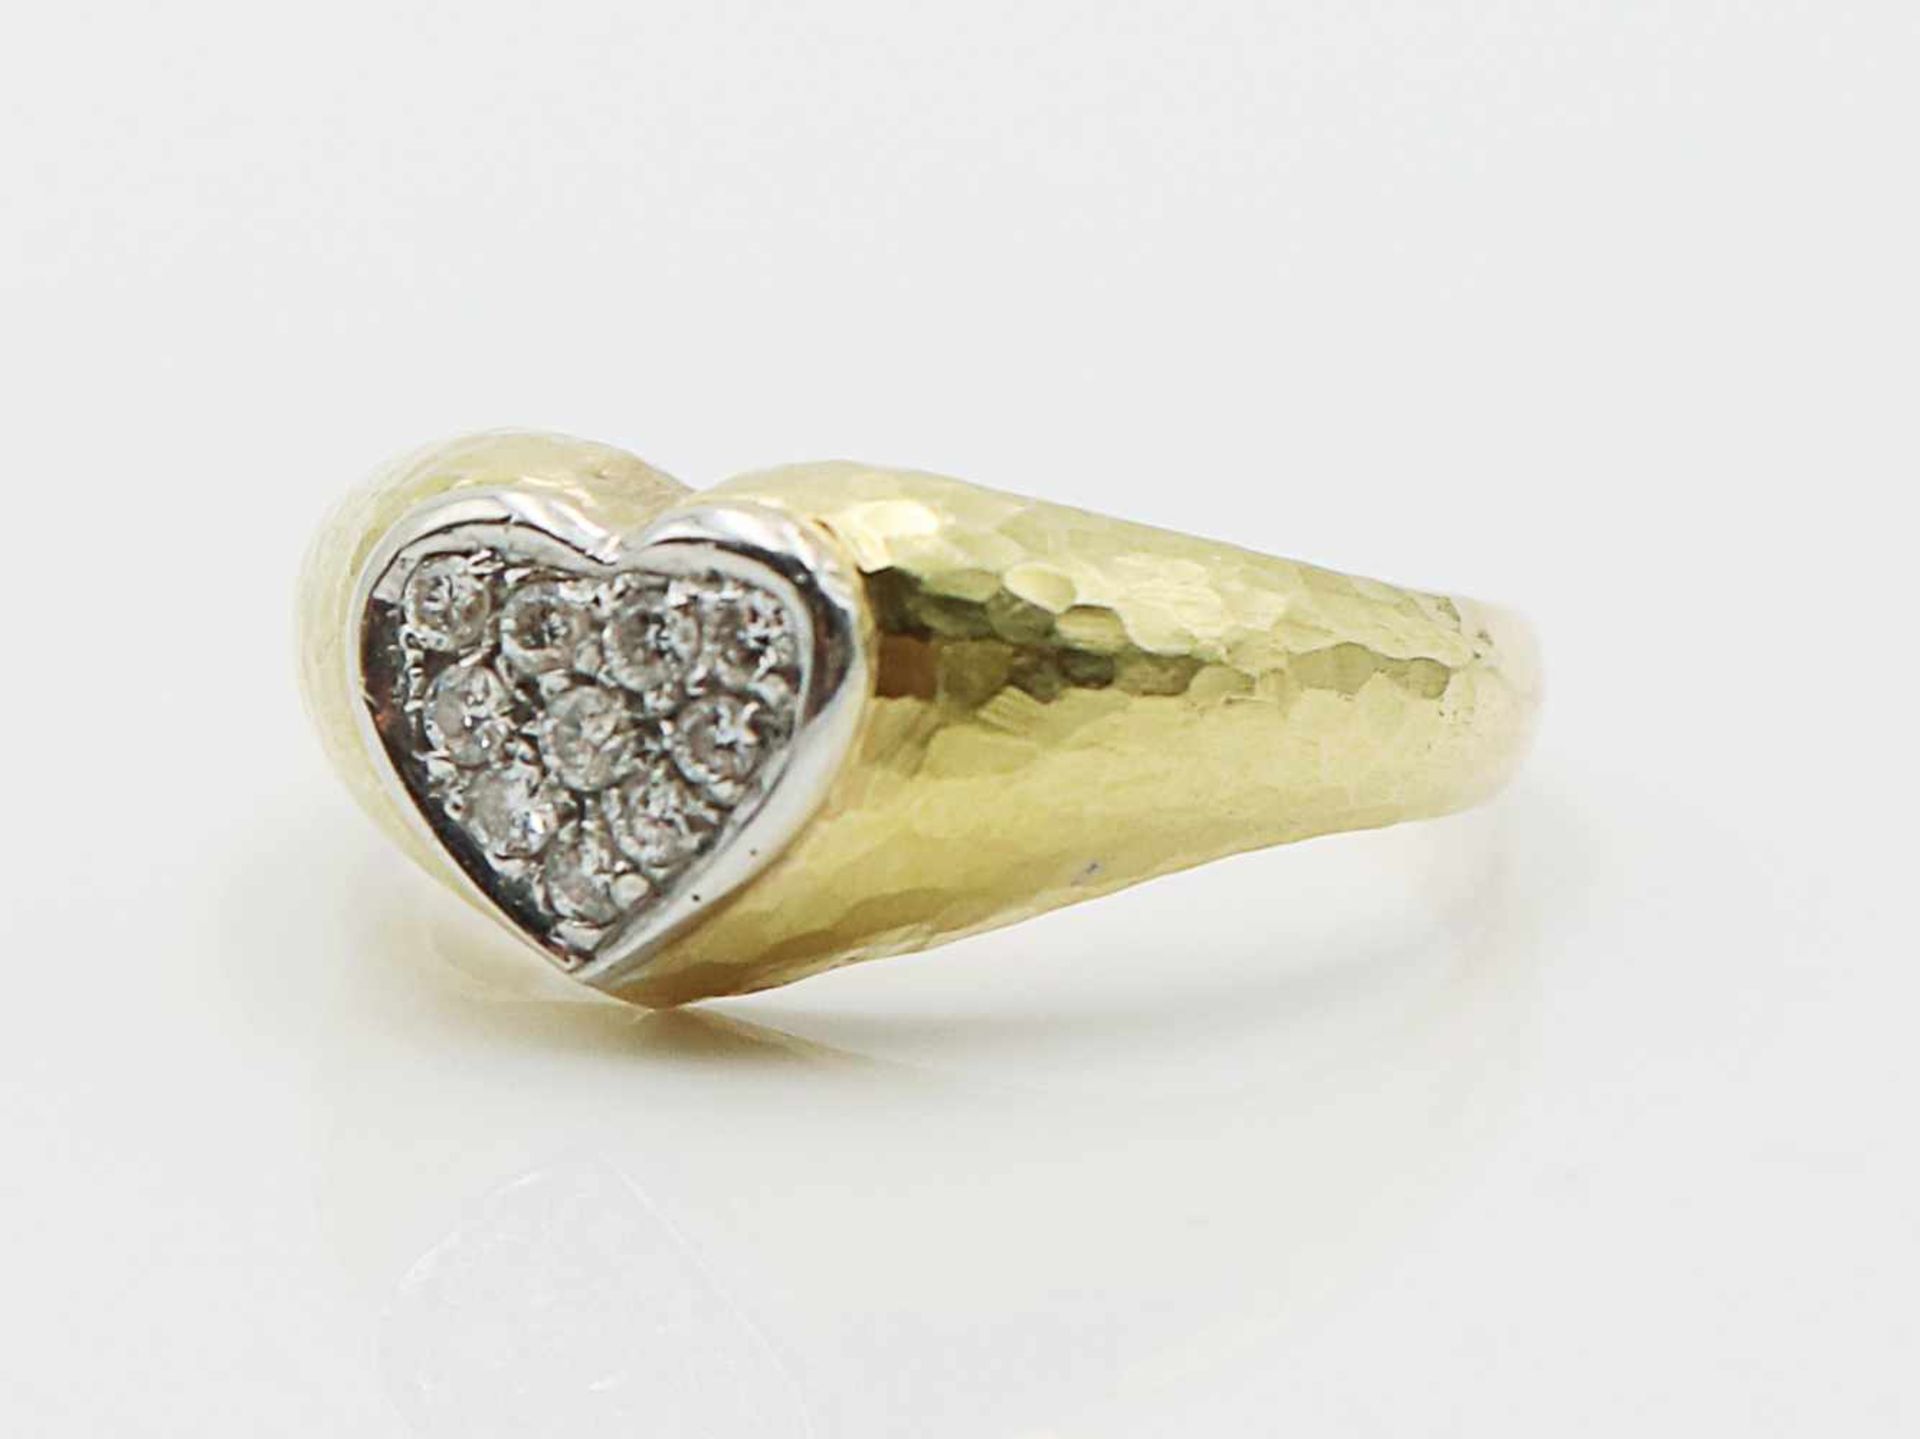 Diamant - DamenringGG 750, herzförmiger Ringkopf besetzt mit Diamanten, zus.ca.0,10ct, herzförmig - Bild 3 aus 8